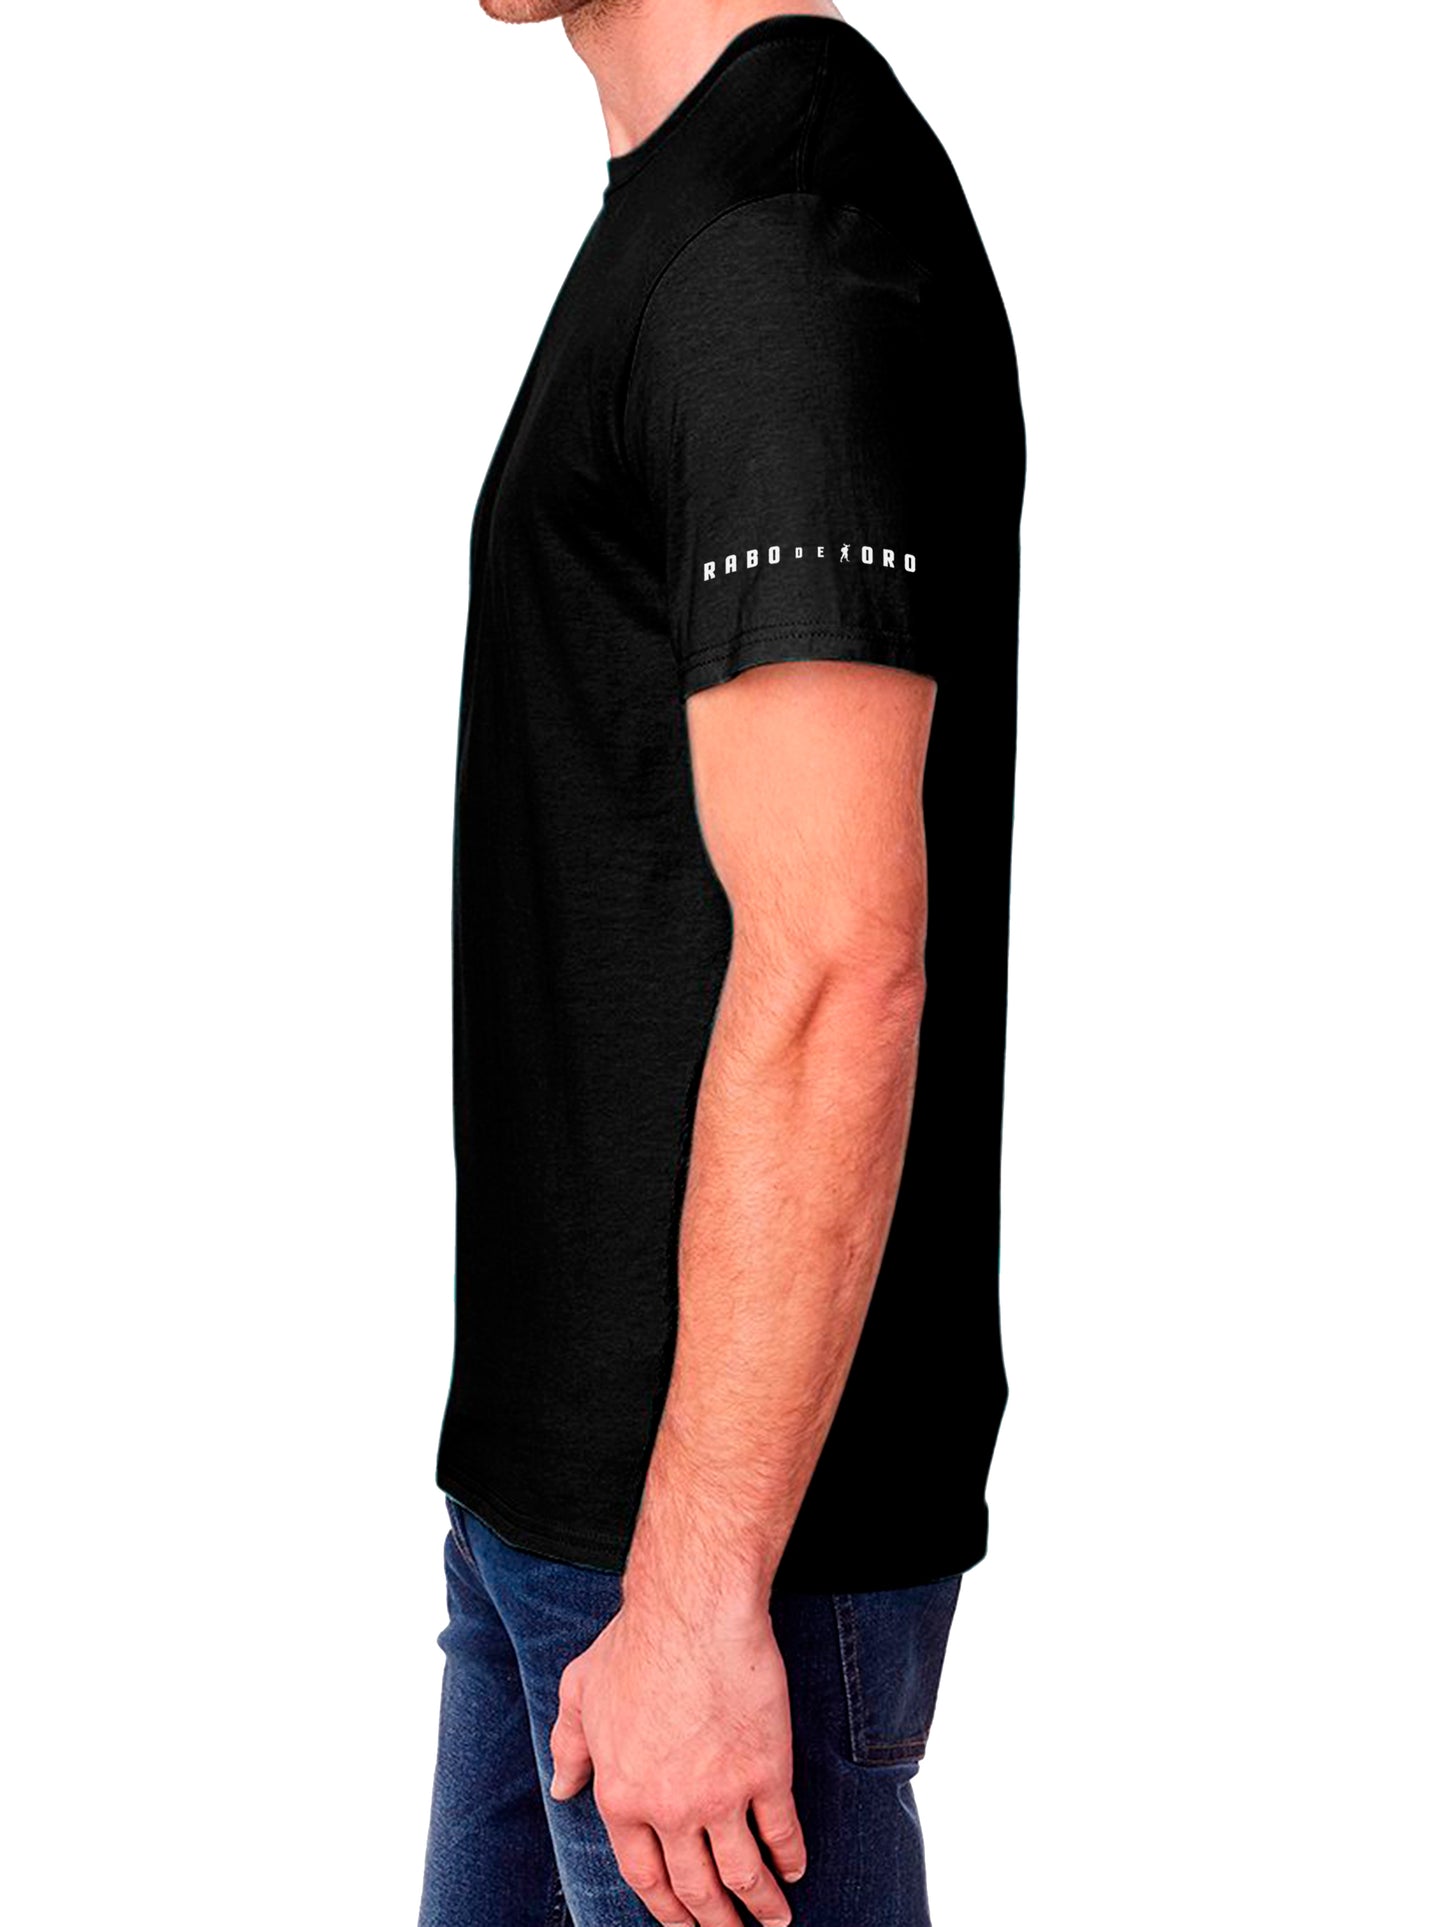 RaboDeToro - CUM RAG Camiseta negra Gay